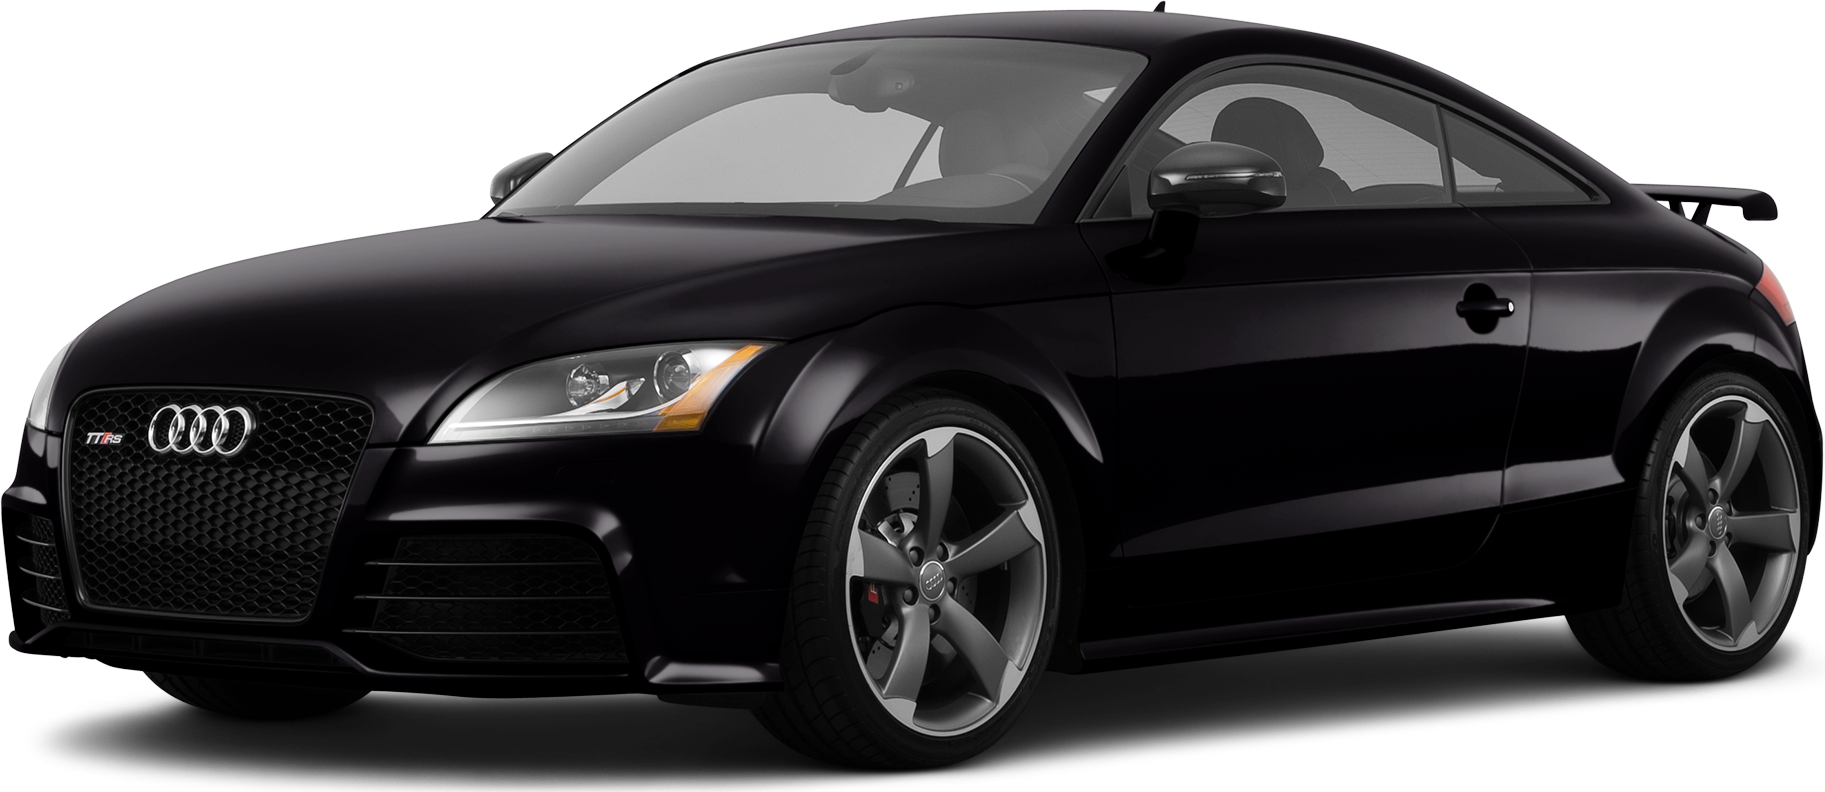 2020 Audi TT Price, Value, Ratings & Reviews